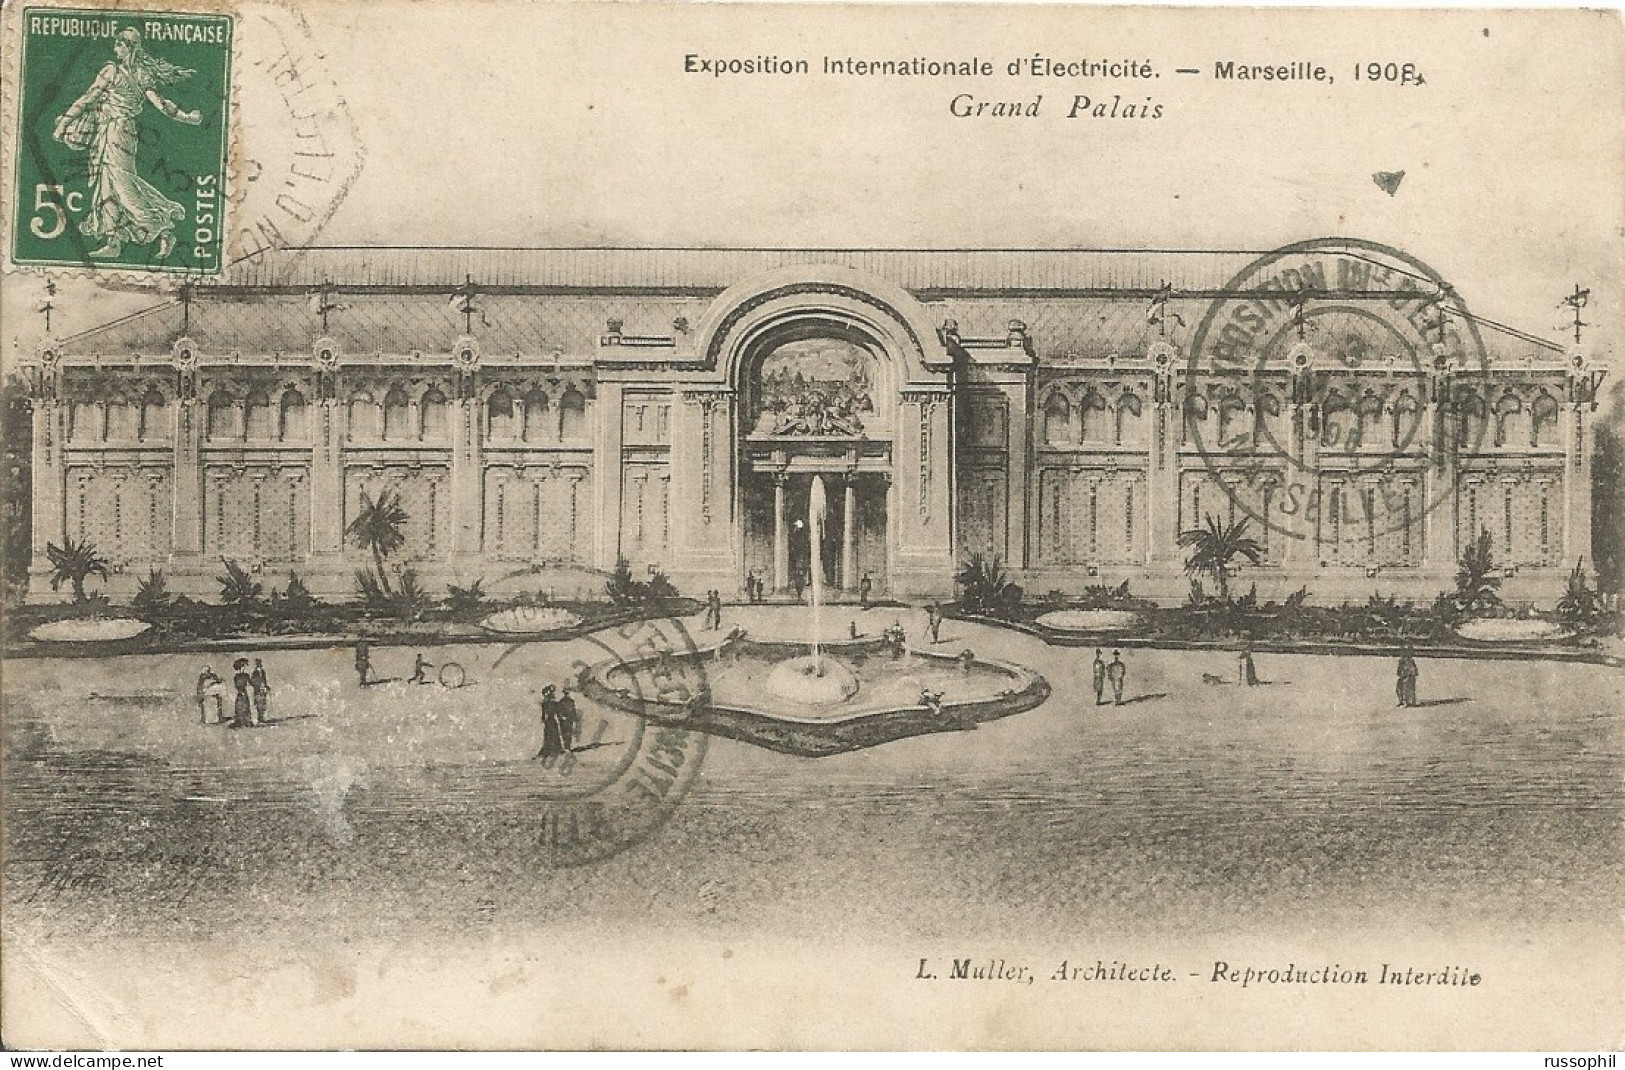 FRANCE - 13 - MARSEILLE - EXPOSITION INTERNATIONALE D'ELECTRICITE 1908 -  GRAND PALAIS - ED. BAUDOUIN - 1908 - Weltausstellung Elektrizität 1908 U.a.